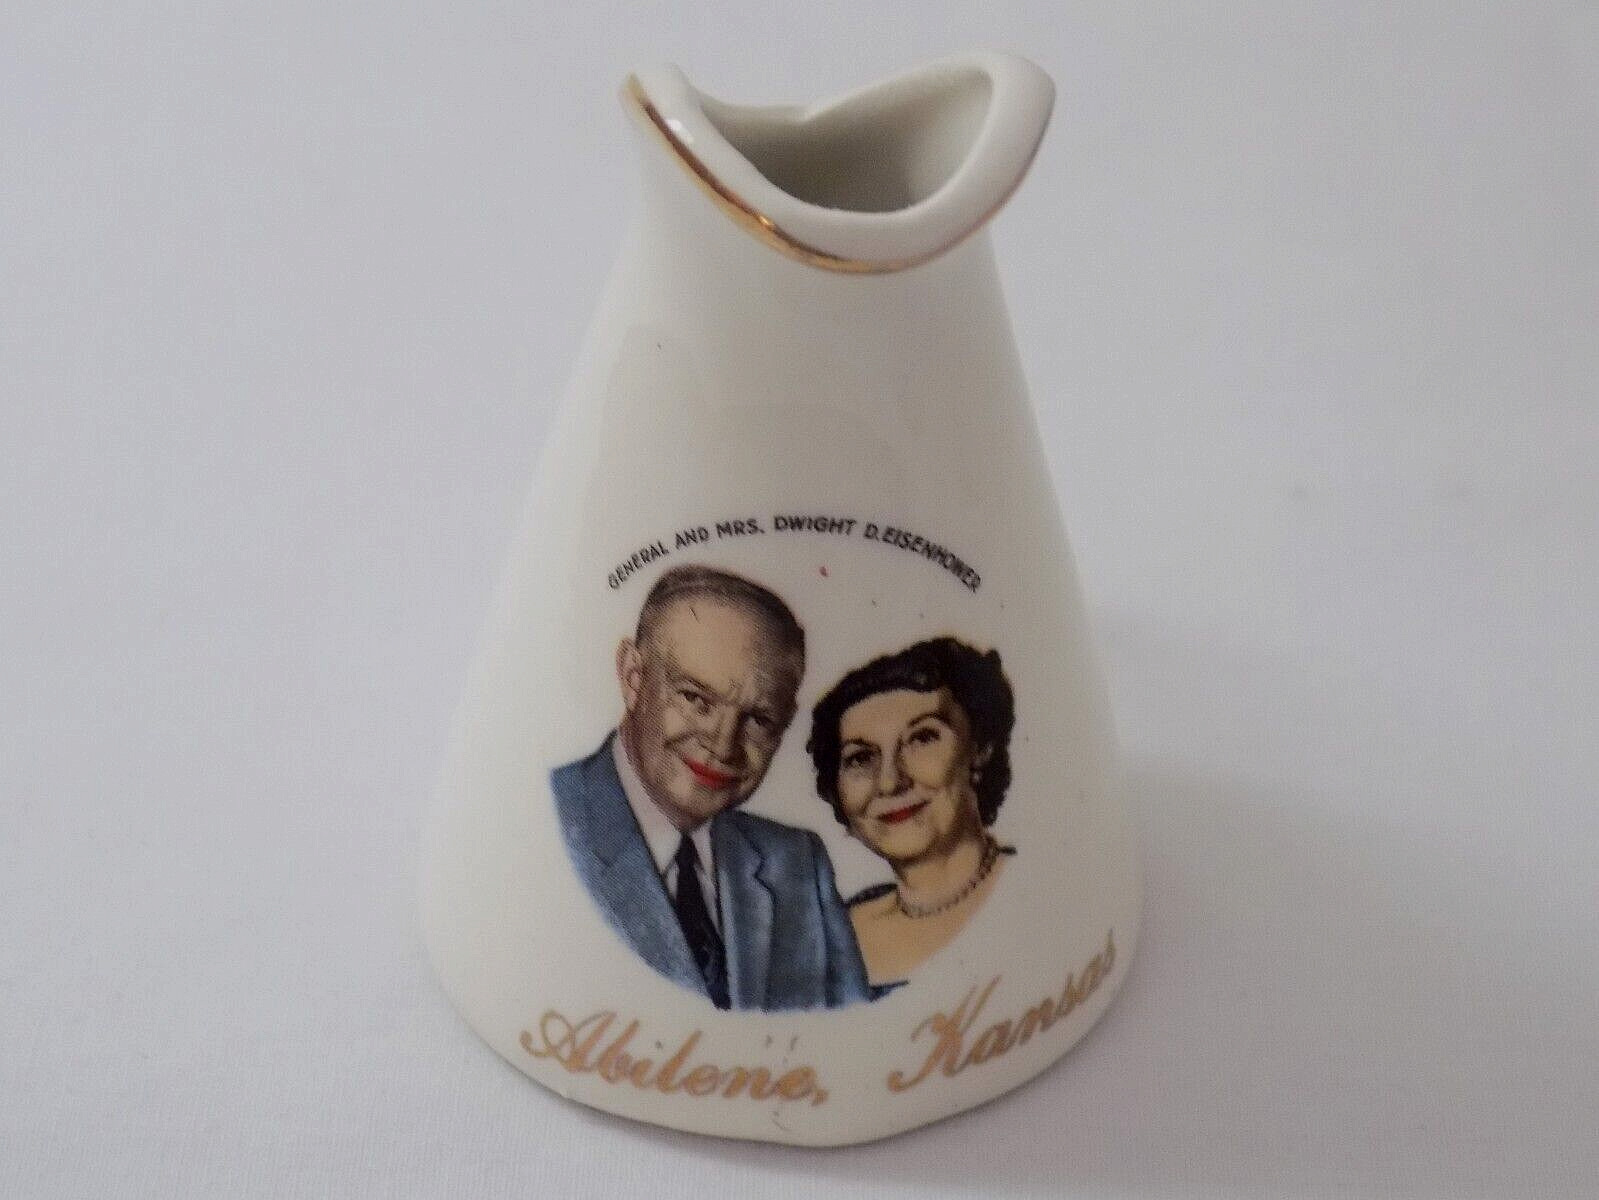 Vinage 1950s-60s General & Mrs. Dwight D. Eisenhower Miniature Souvenir Pitcher